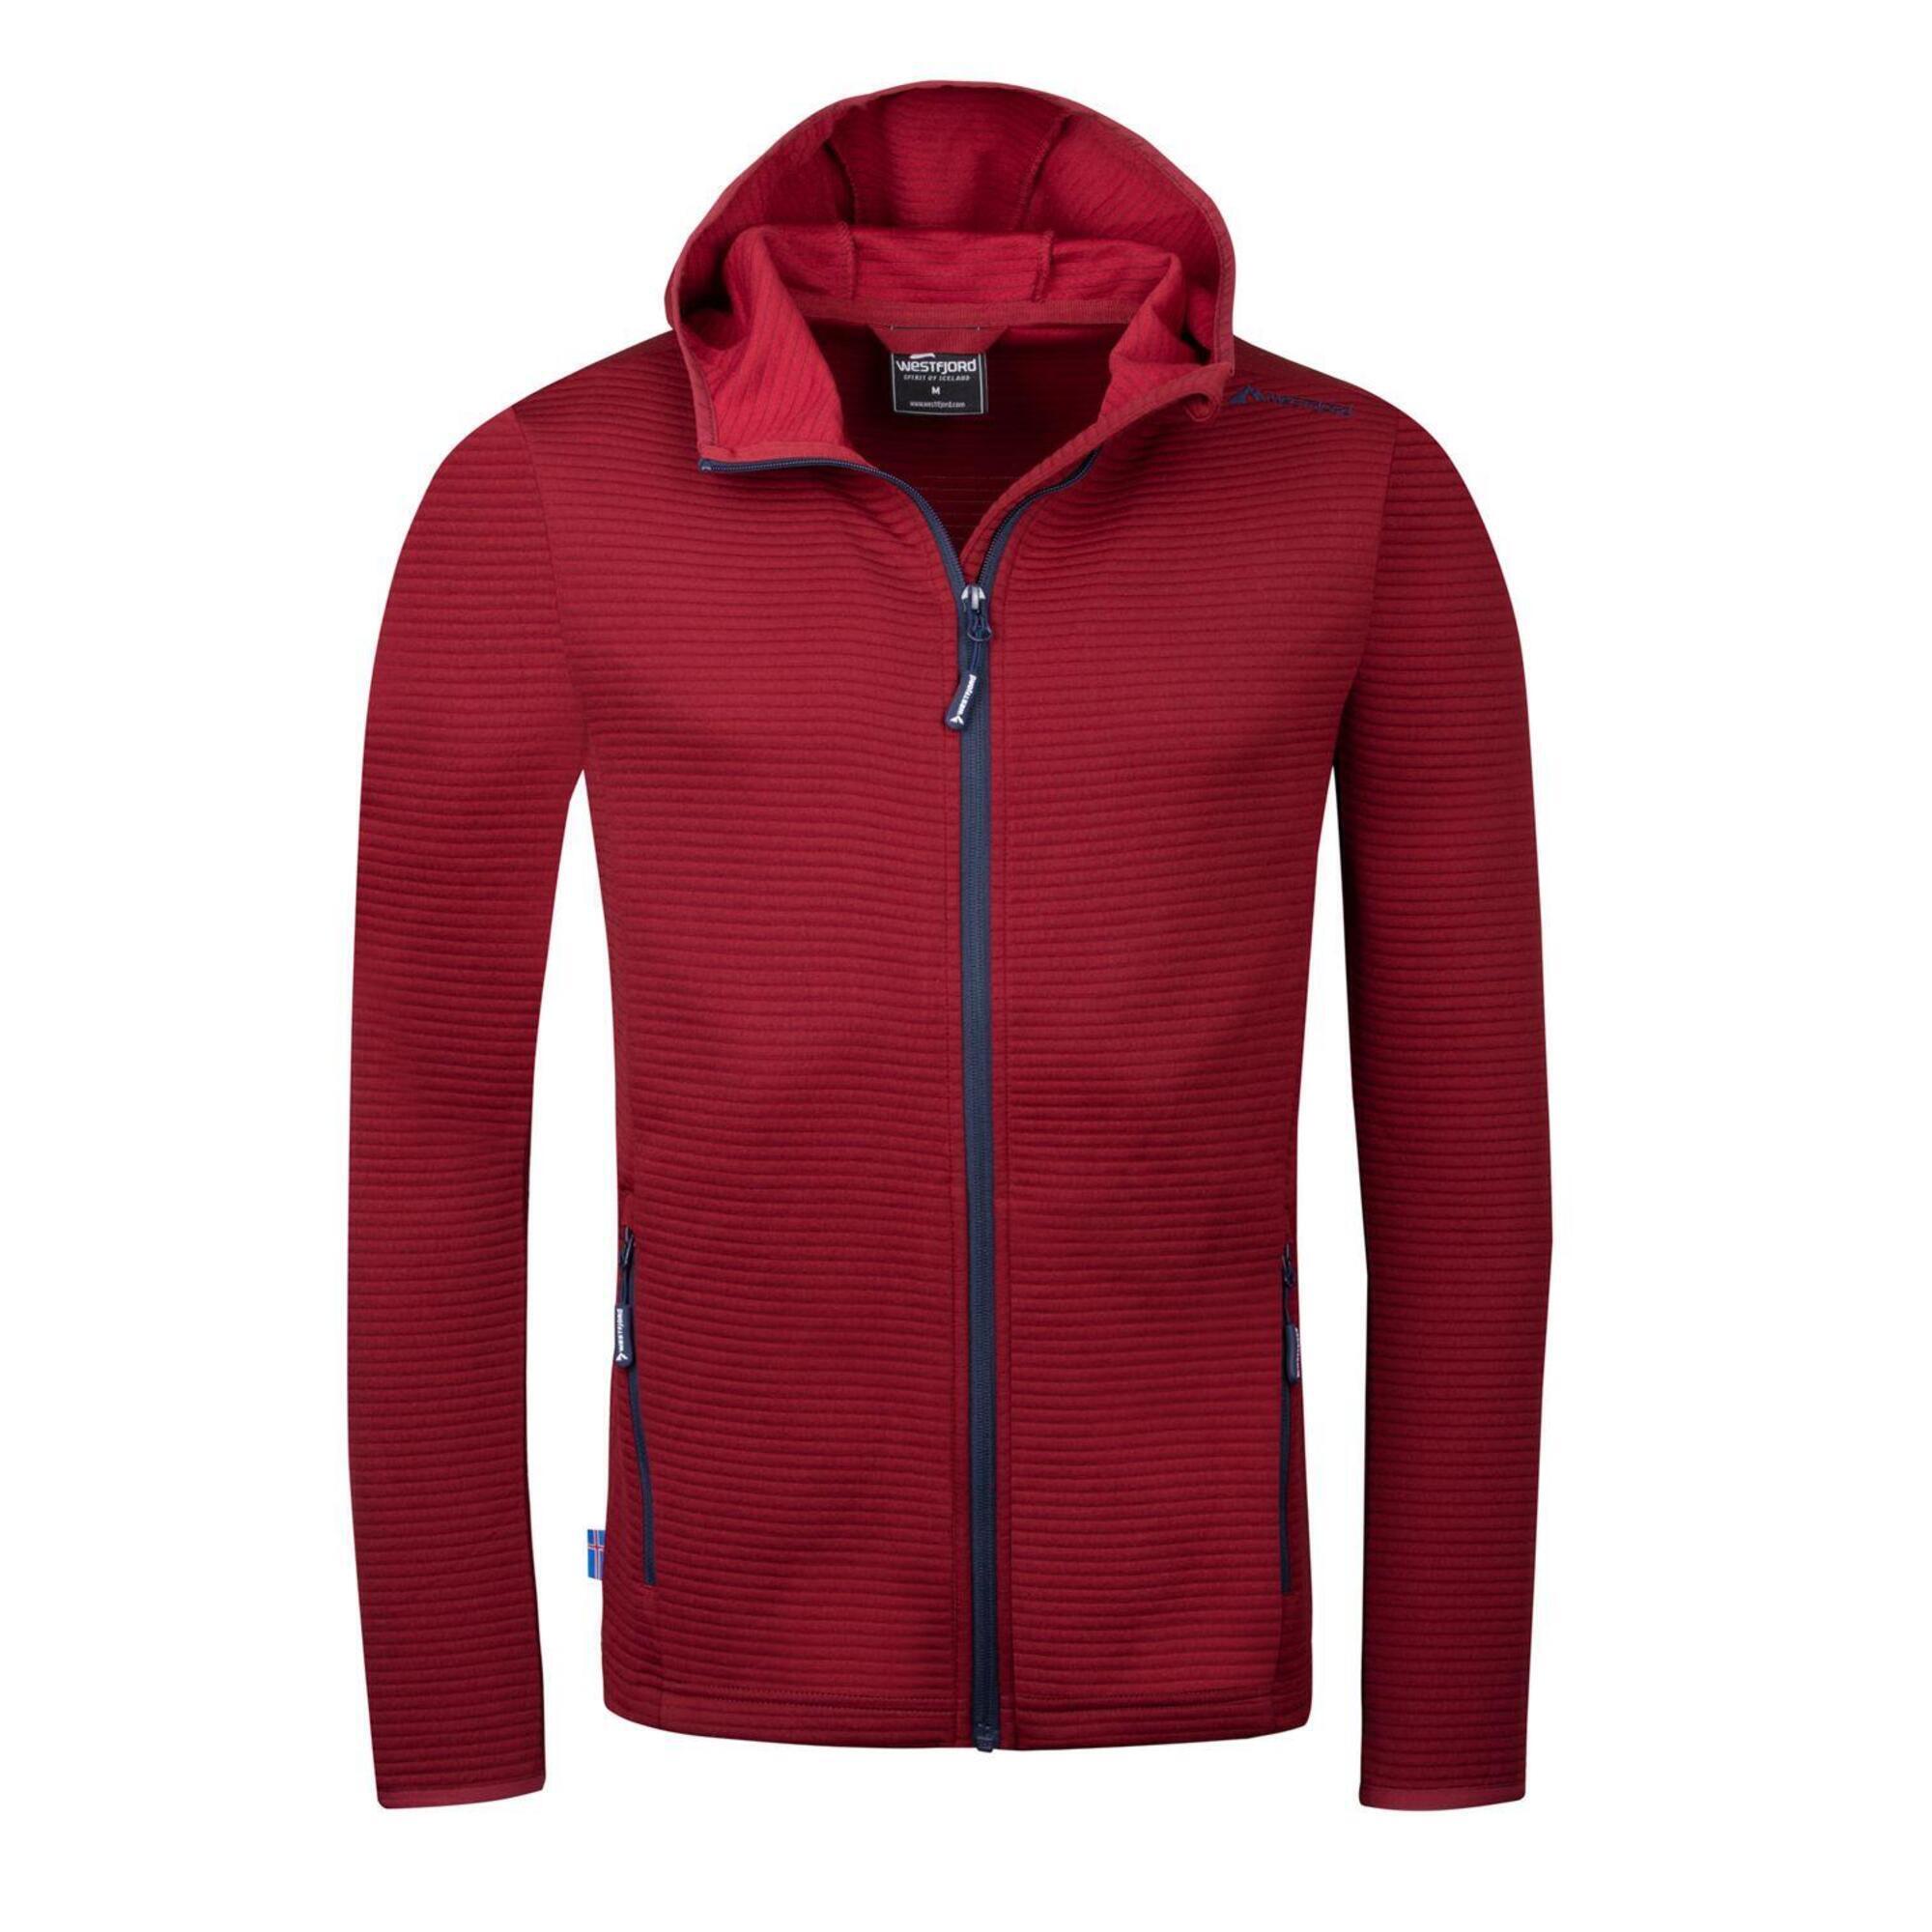 Куртка Westfjord Skardsvik мужская флисовая, красный куртка флисовая мужская new look men 250 бирюзовая размер xl